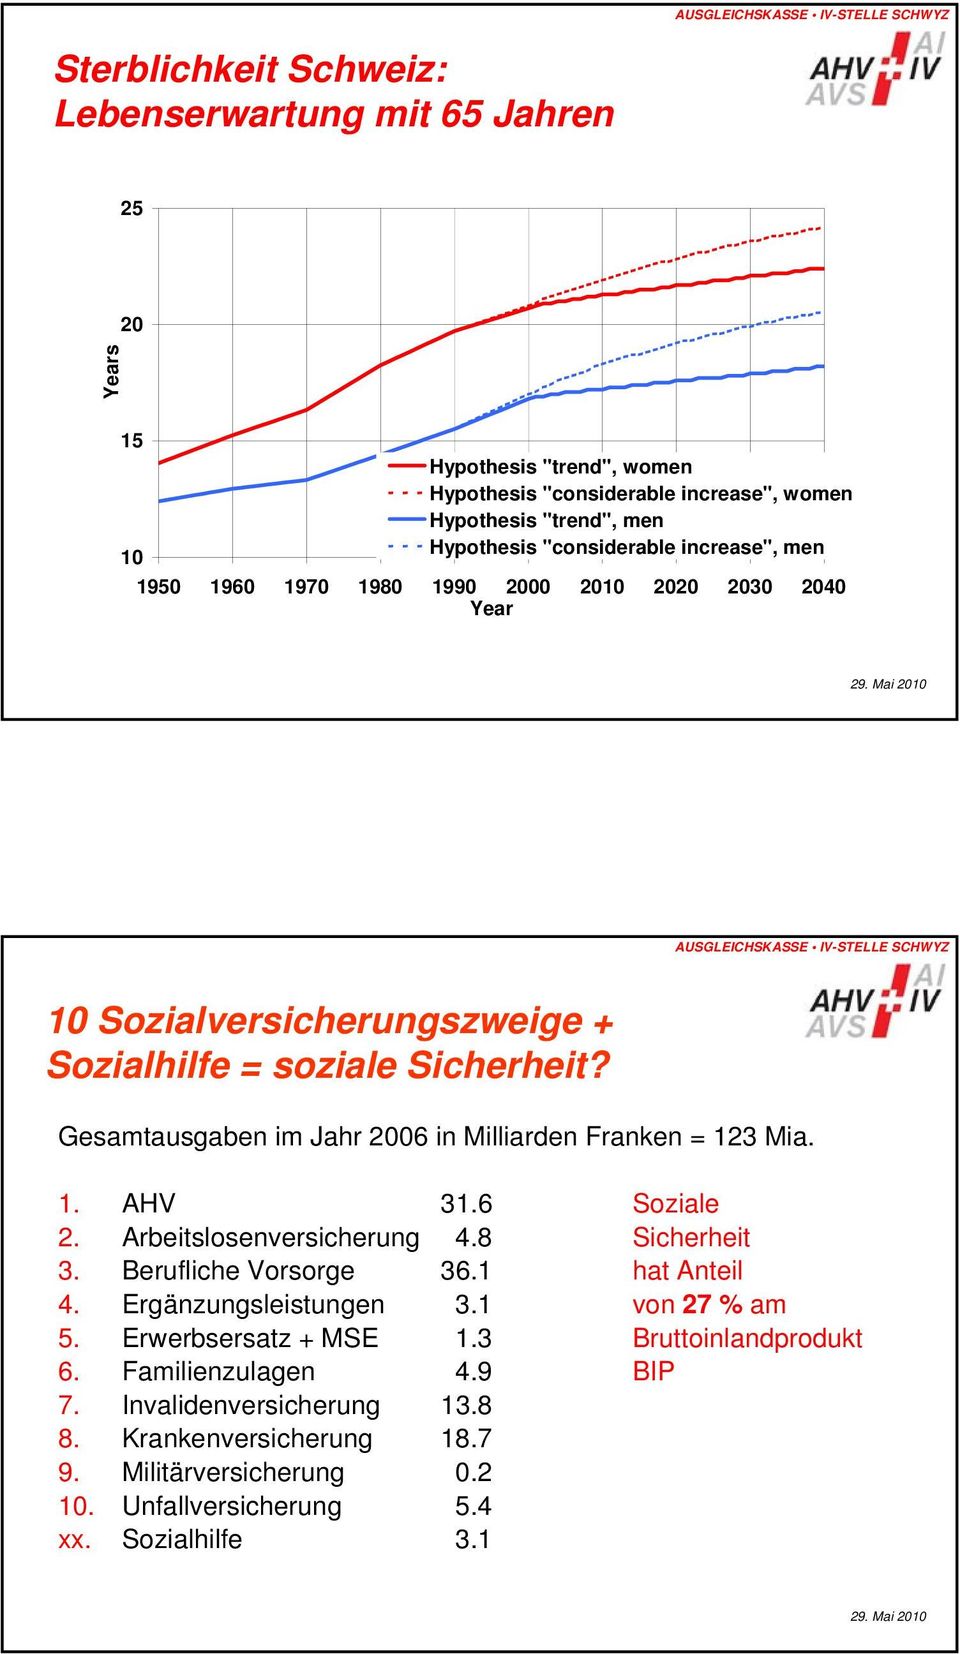 Gesamtausgaben im Jahr 2006 in Milliarden Franken = 123 Mia. 1. AHV 31.6 Soziale 2. Arbeitslosenversicherung 4.8 Sicherheit 3. Berufliche Vorsorge 36.1 hat Anteil 4.